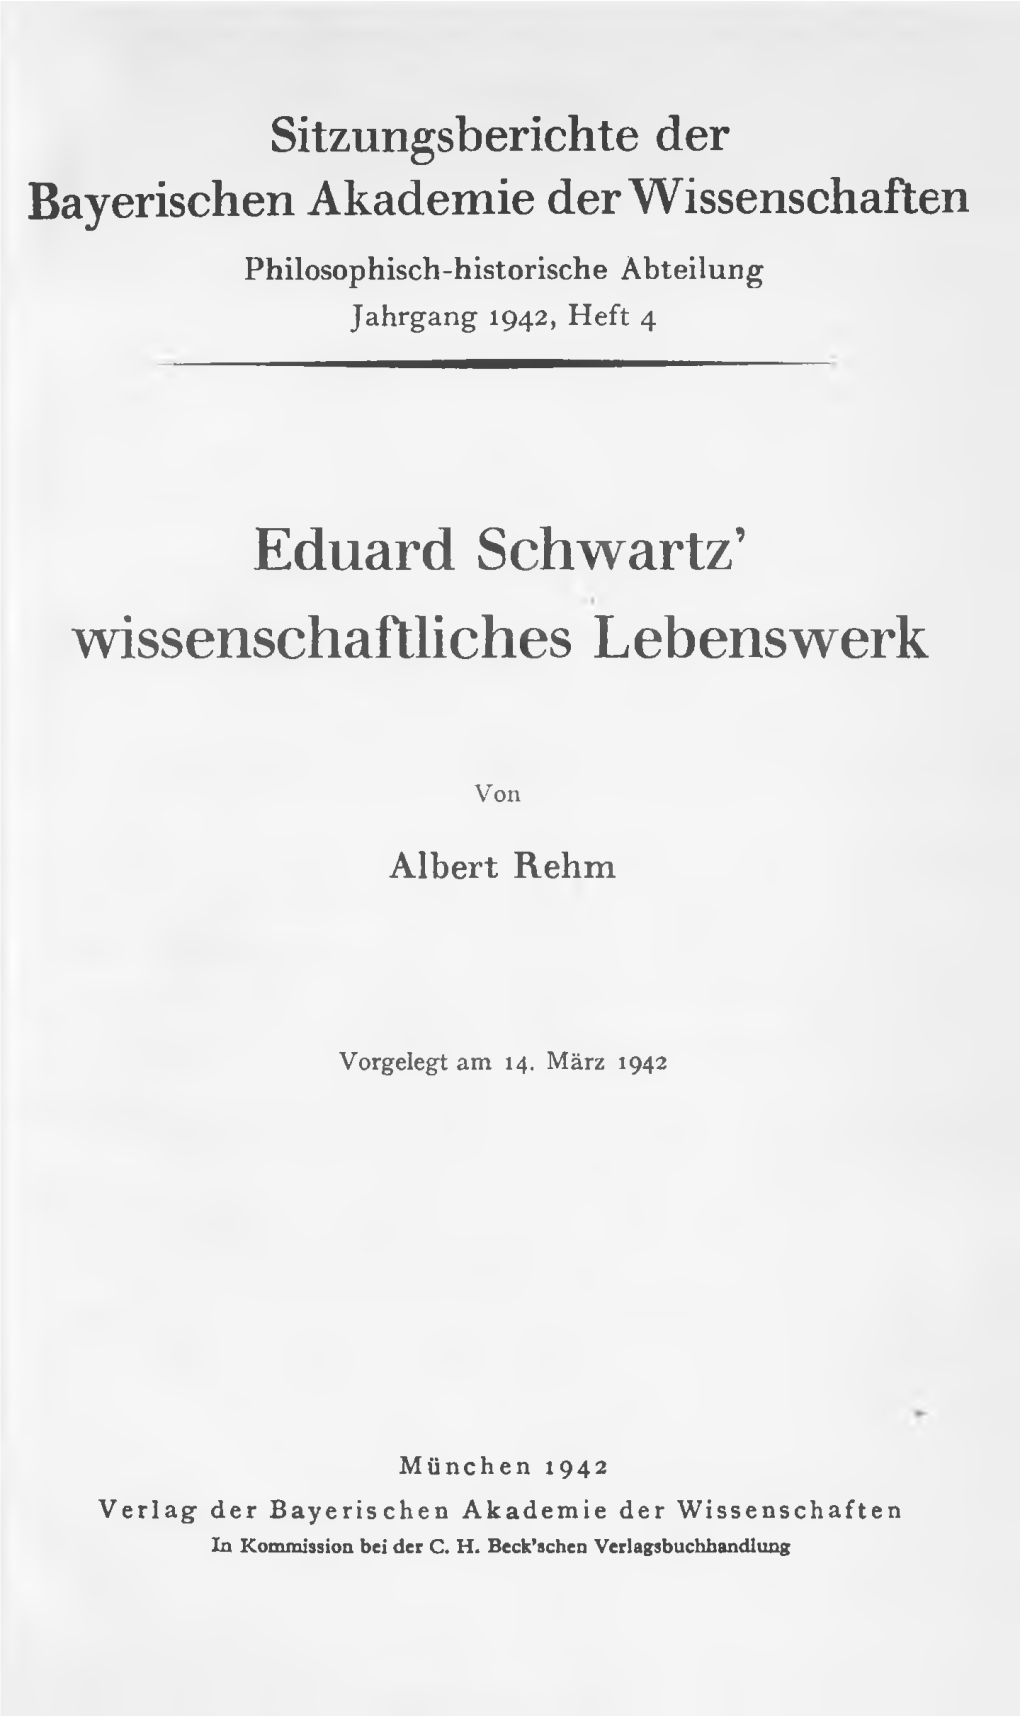 Eduard Schwartz' Wissenschaftliches Lebenswerk. Vorgelegt